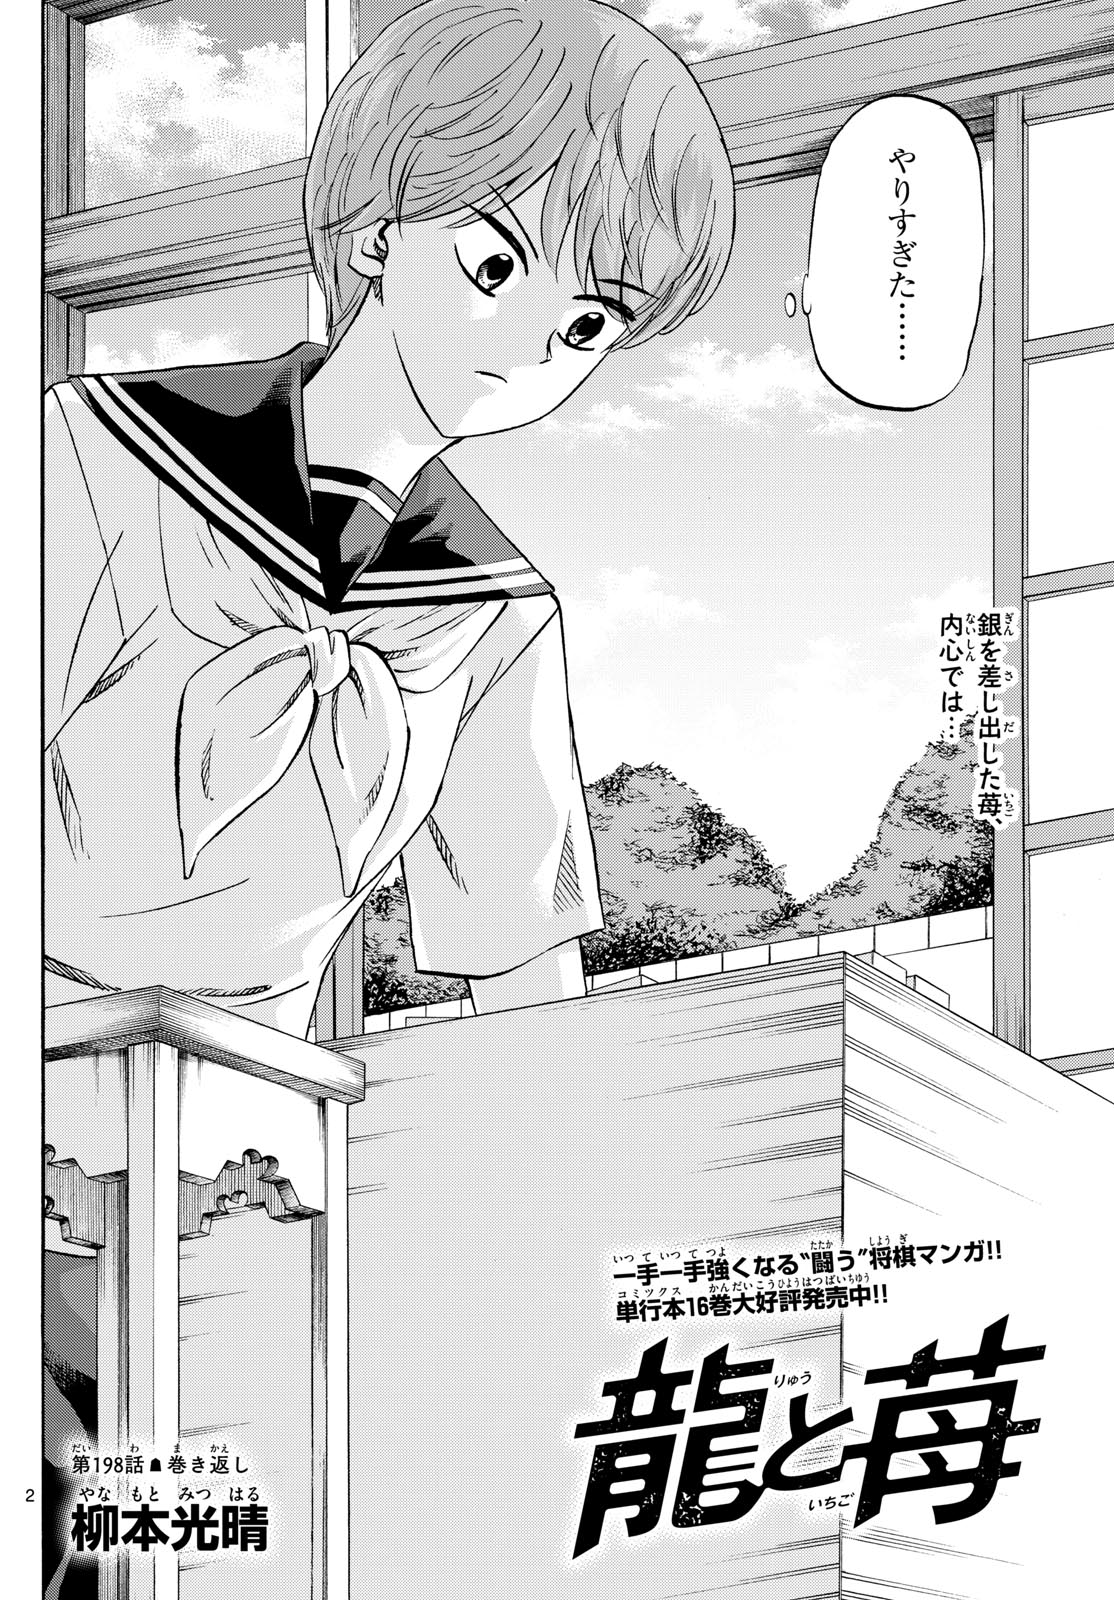 Tatsu to Ichigo - Chapter 198 - Page 2